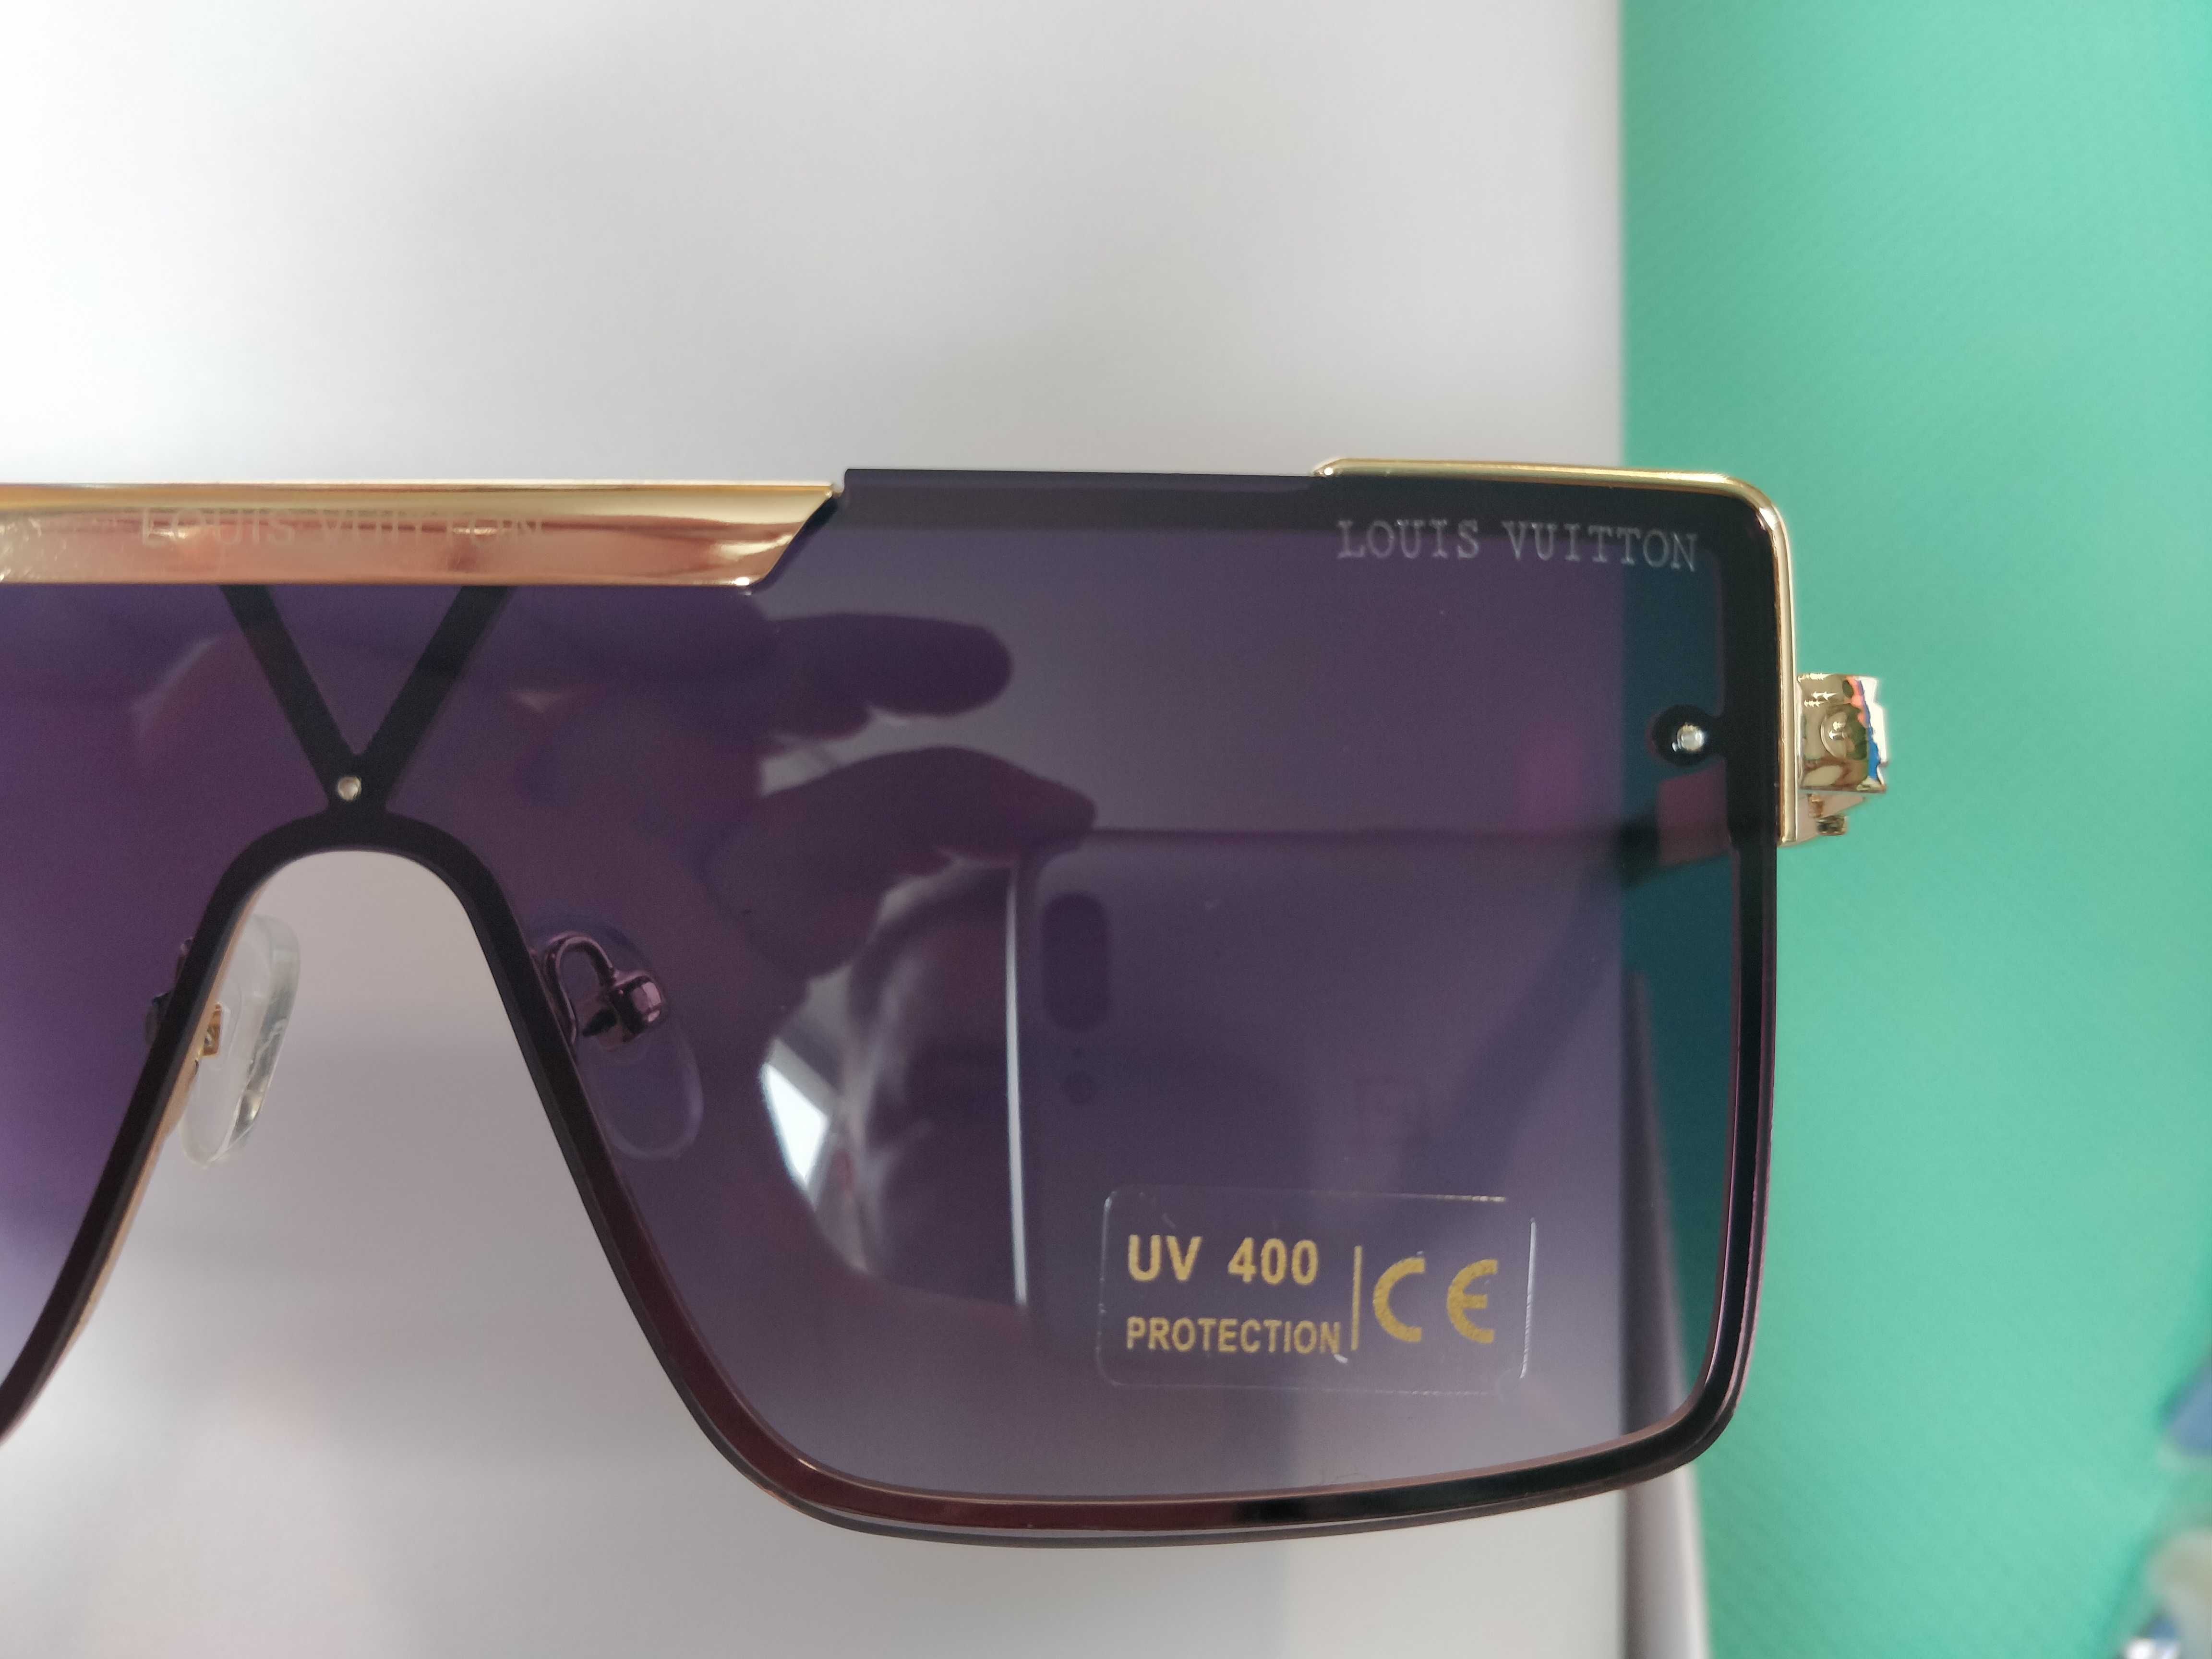 Ochelari de soare Louis Vuitton UV400